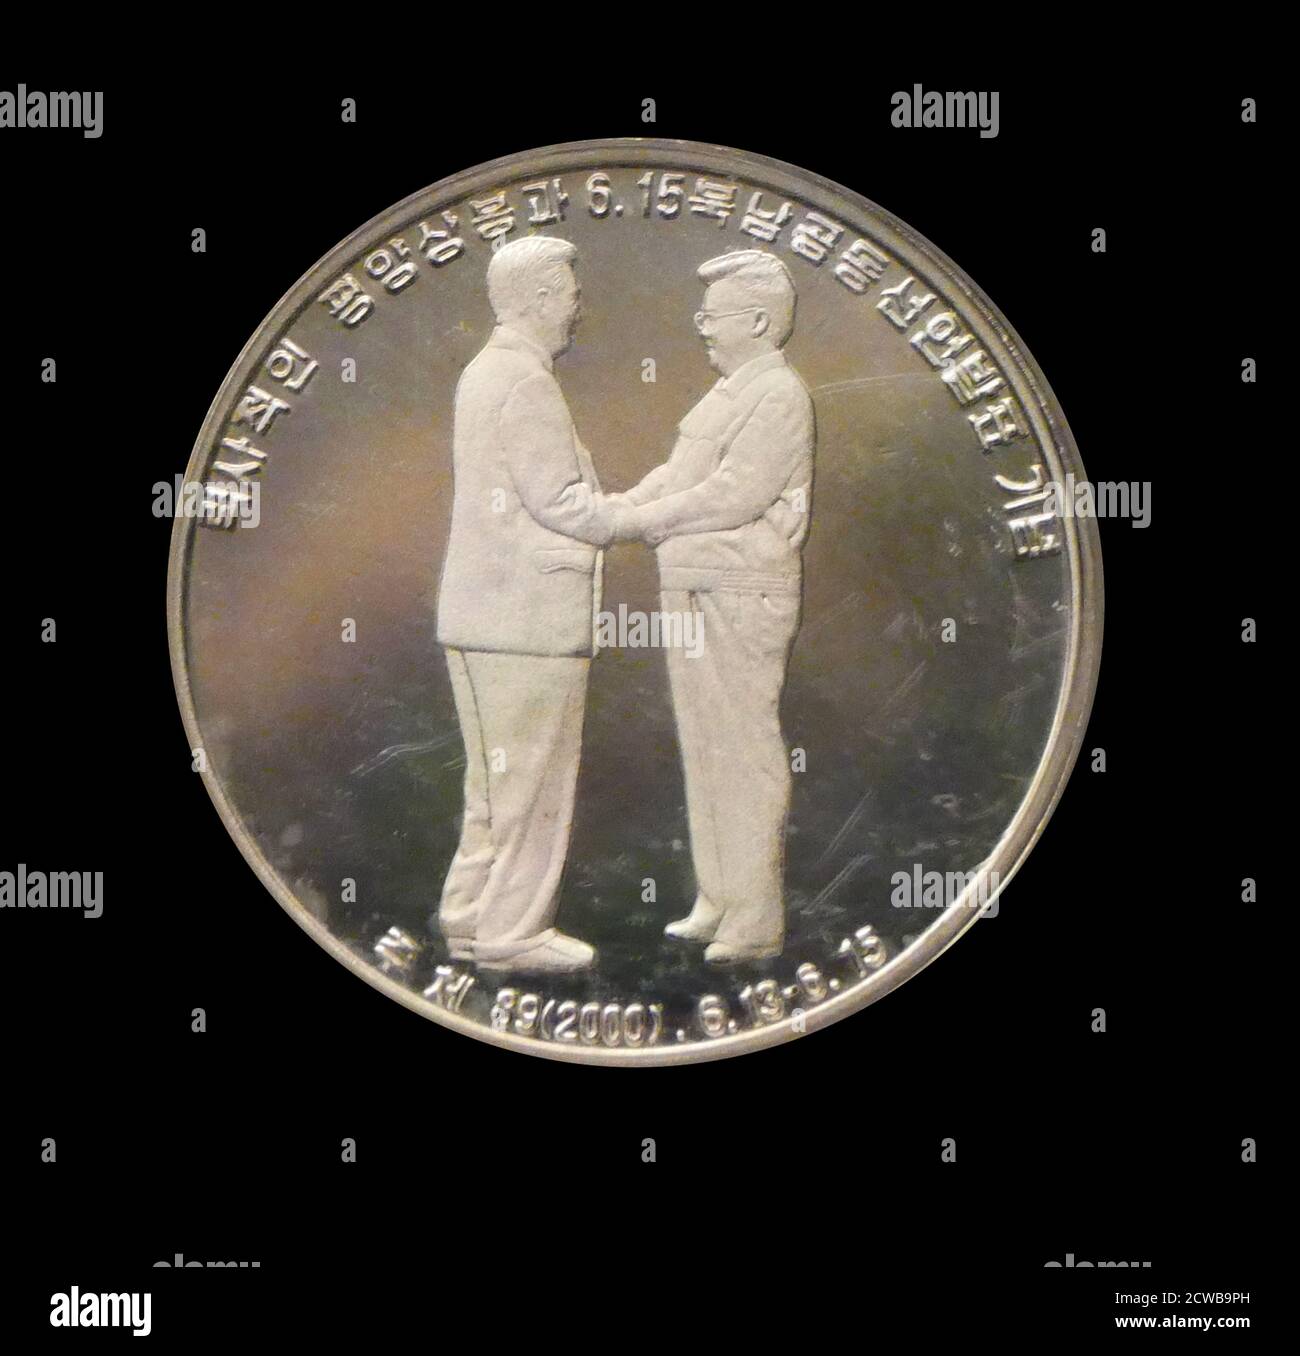 Moneta d'argento per commemorare l'incontro di Kim Dae-Jung e Kim Jong-il a Pyongyang Foto Stock